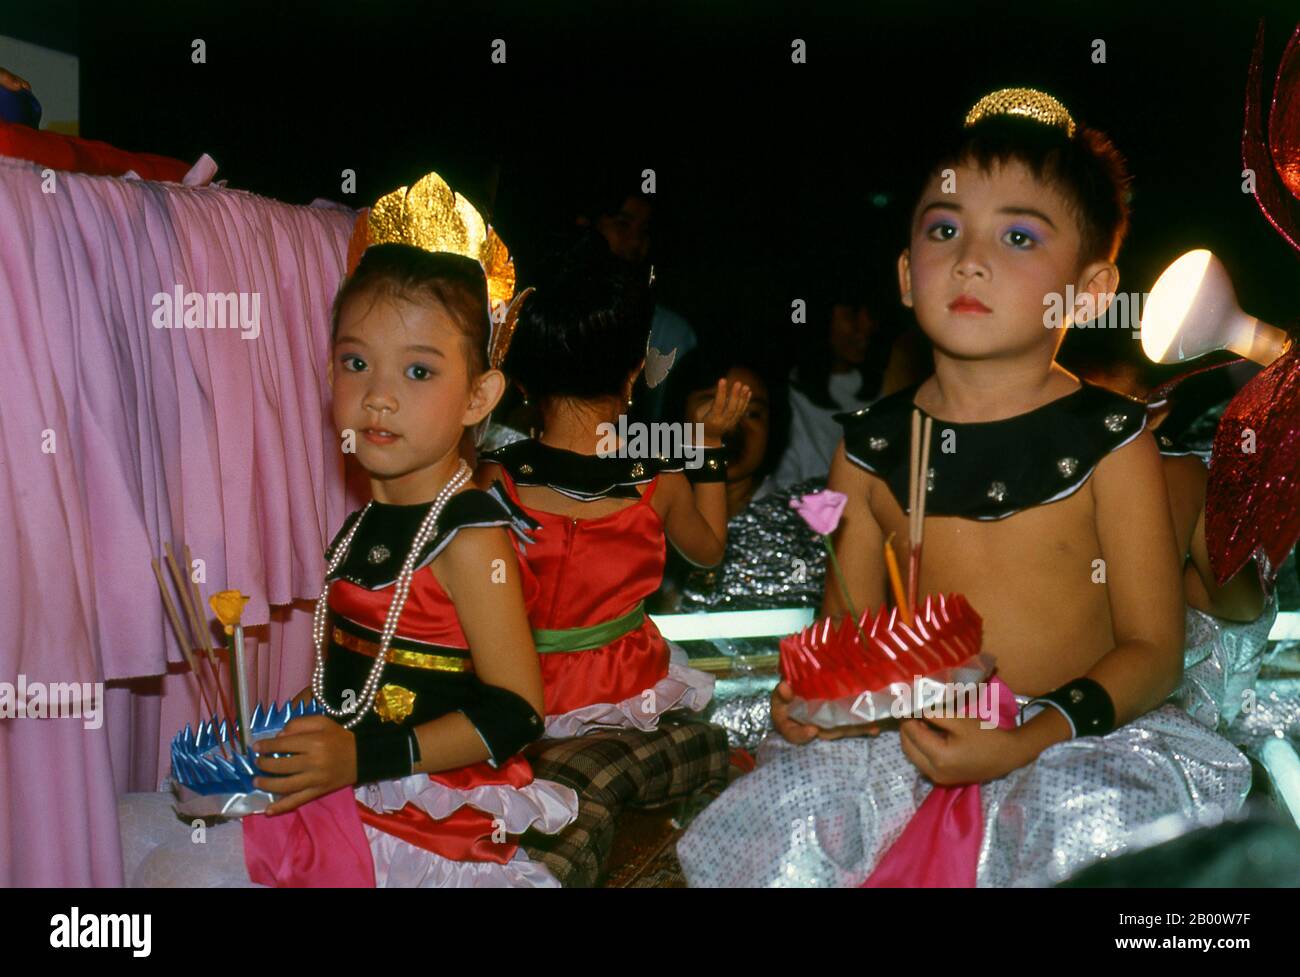 Thaïlande: Les enfants prêts à flotter leurs krathongs, Festival Loy Krathong, Phuket. Enfants en costume traditionnel avec leurs krathongs, Phuket, Thaïlande du Sud. Loy Krathong se tient chaque année le jour de la pleine nuit de lune du 12ème mois dans le calendrier lunaire thaïlandais traditionnel. Dans le nord de la Thaïlande cela coïncide avec le festival Lanna connu sous le nom de Yi Peng. Banque D'Images